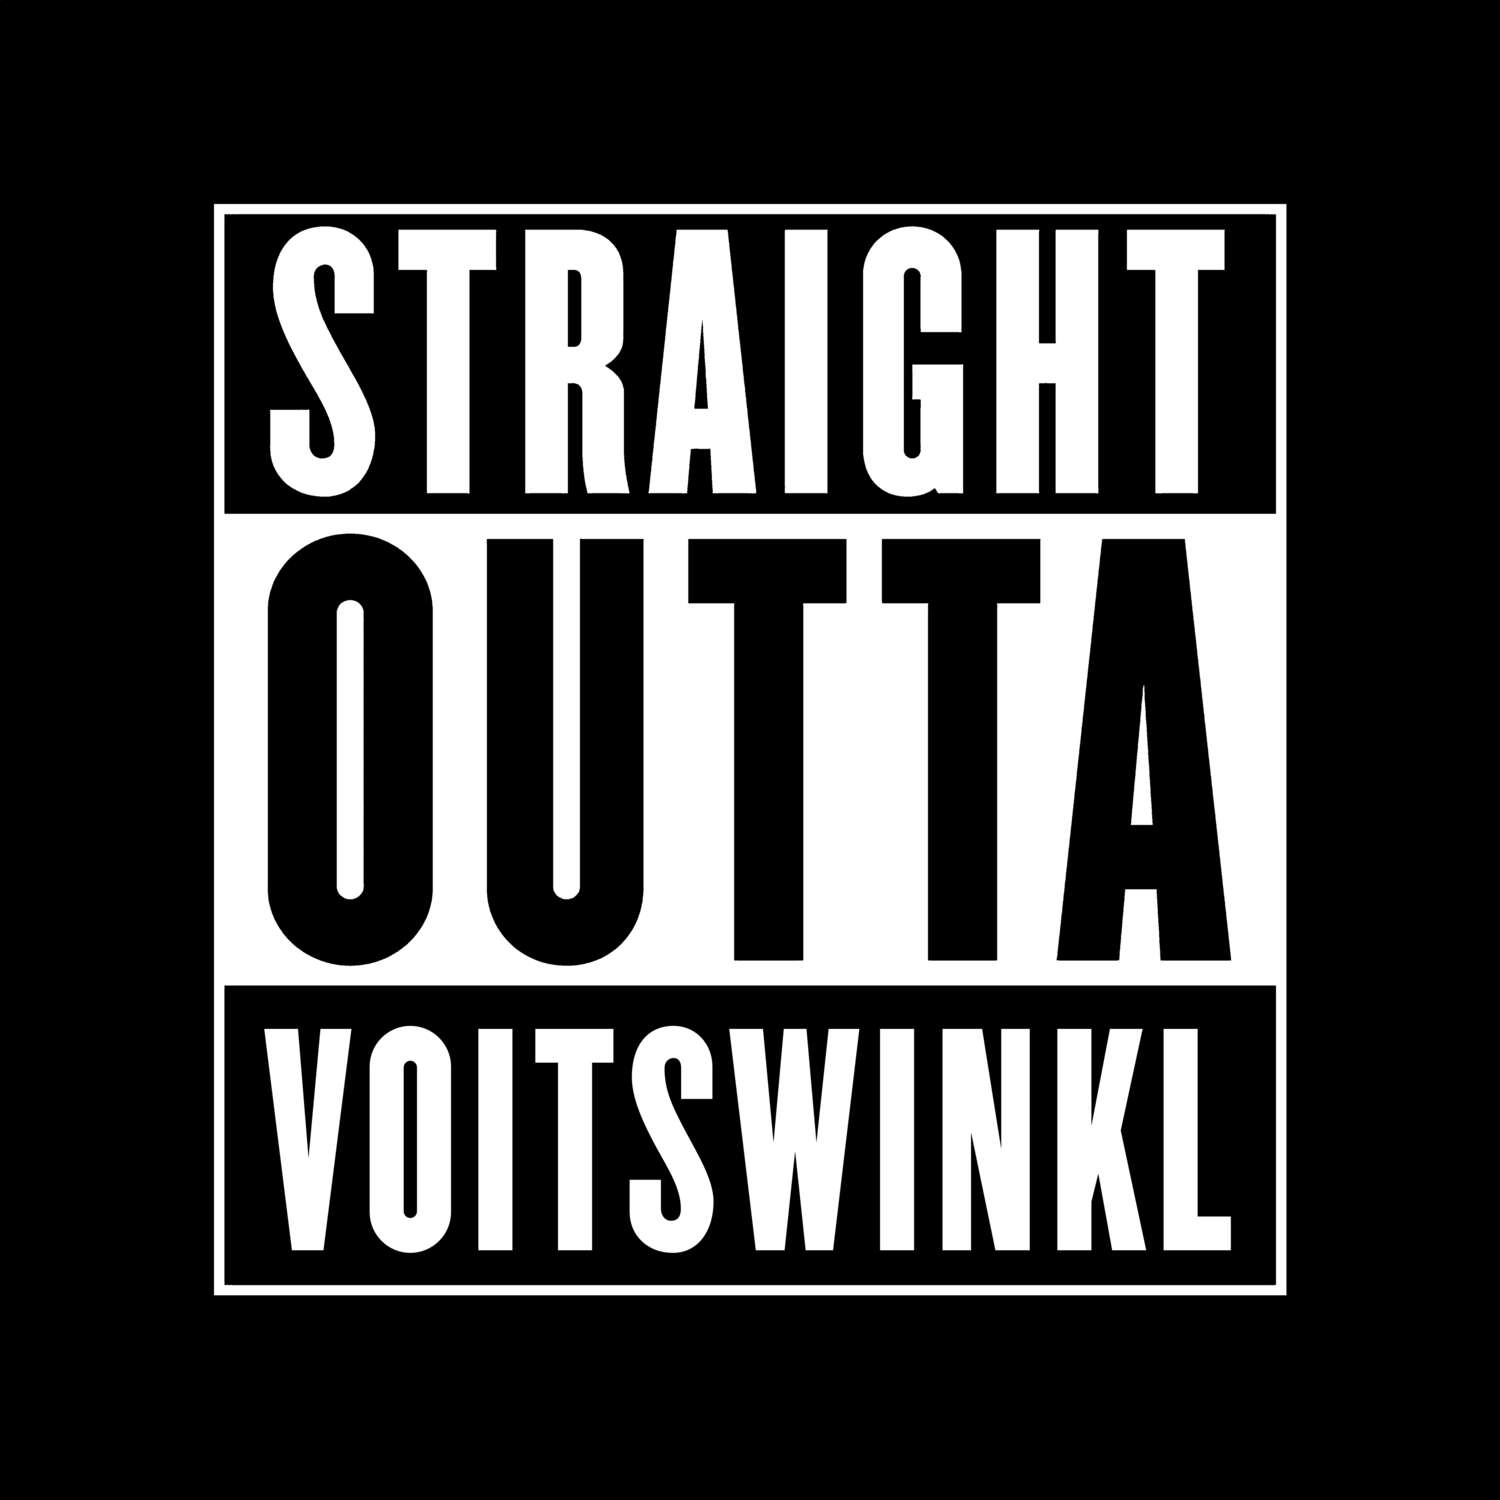 Voitswinkl T-Shirt »Straight Outta«